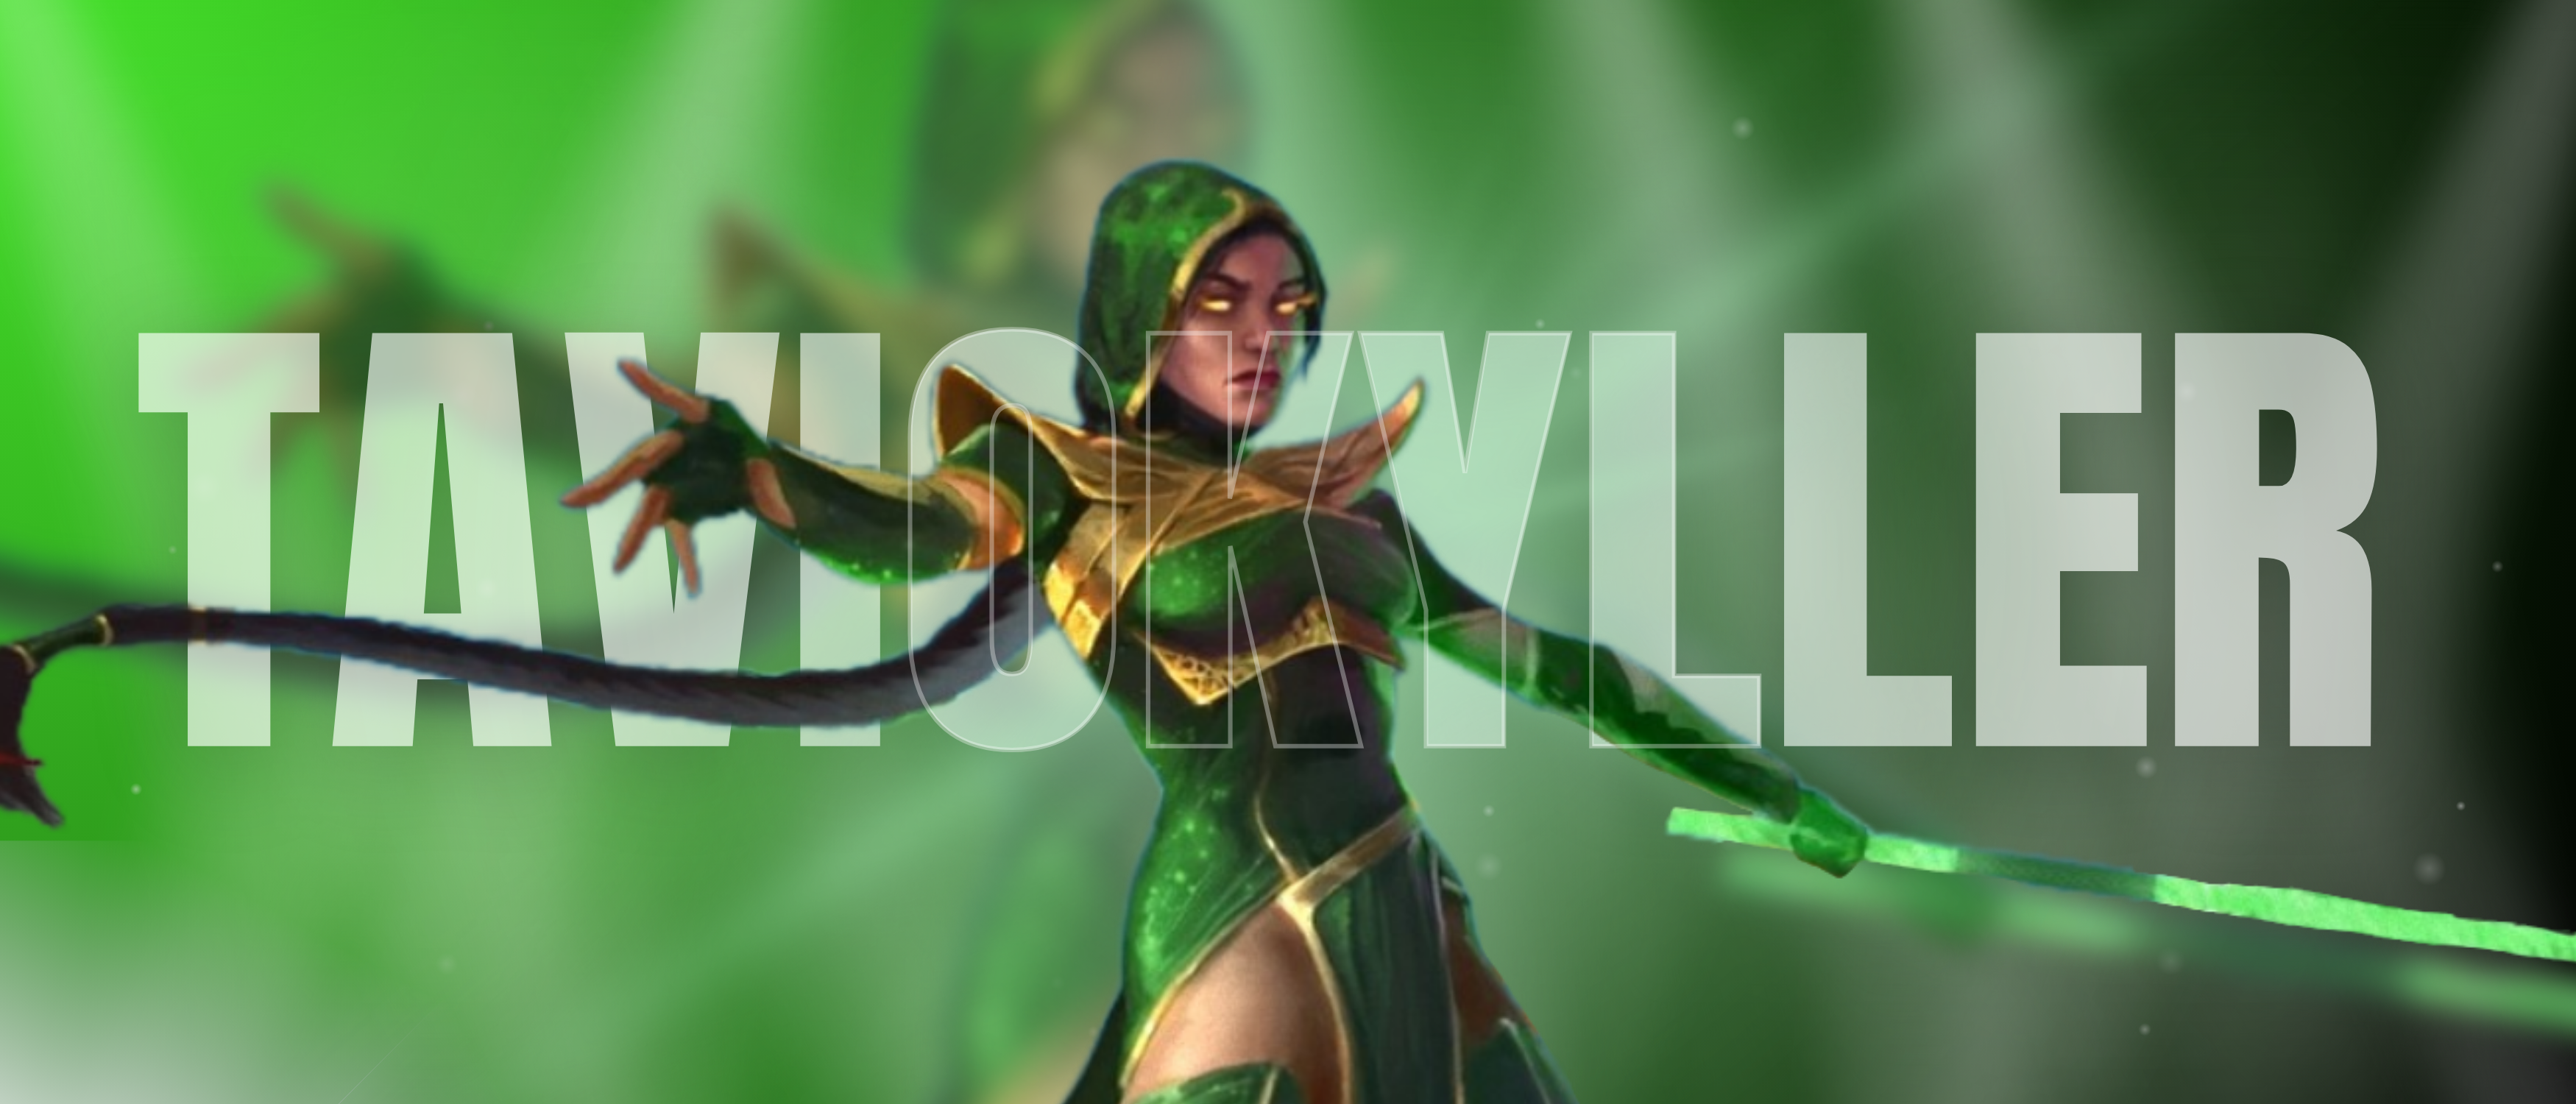 General 3500x1500 Jade (Mortal Kombat) metalanguage video game characters TavioKyller digital art ultrawide video games